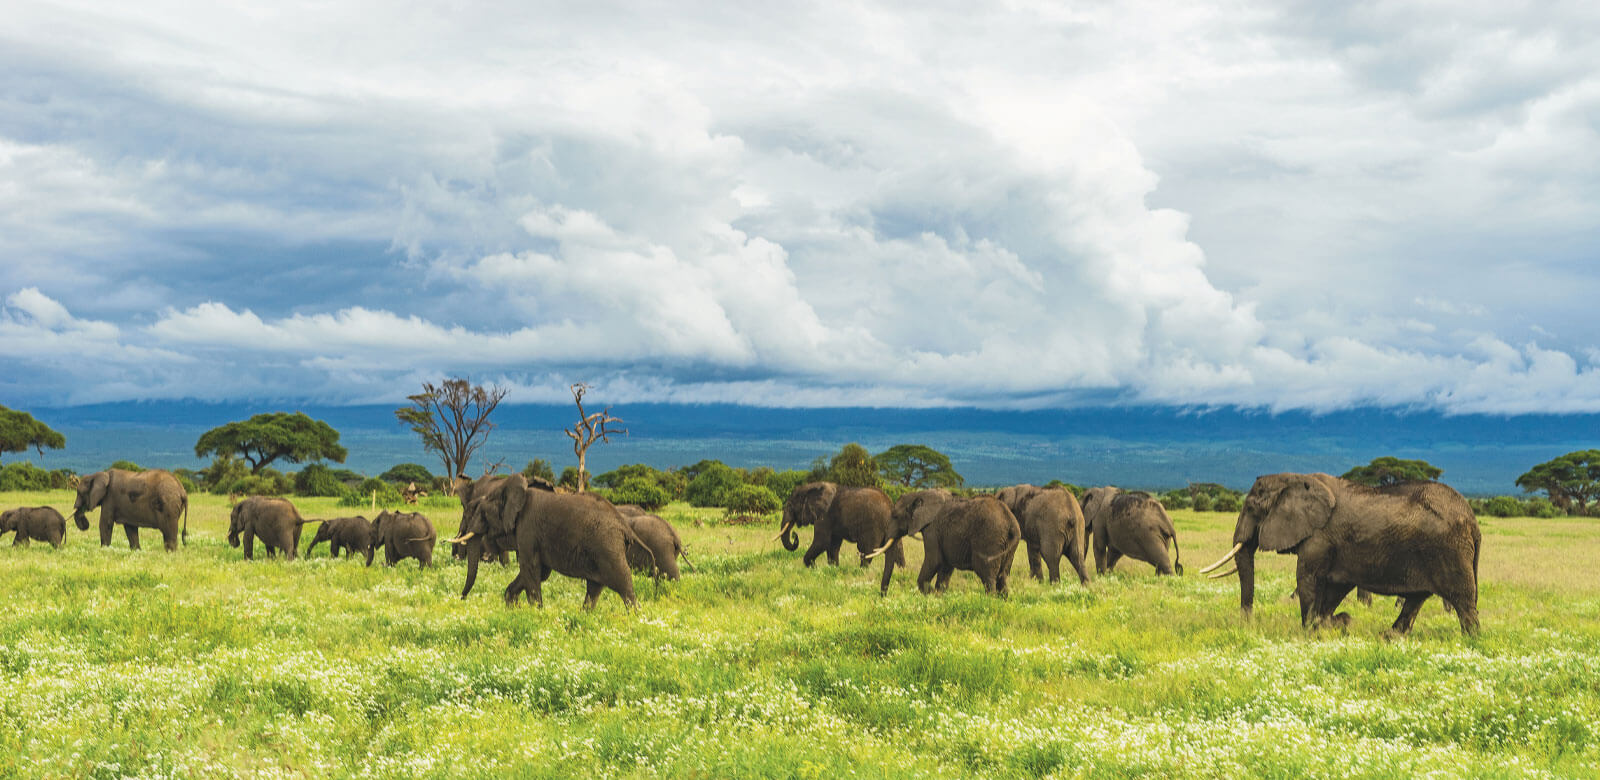 Herd of elephants in field